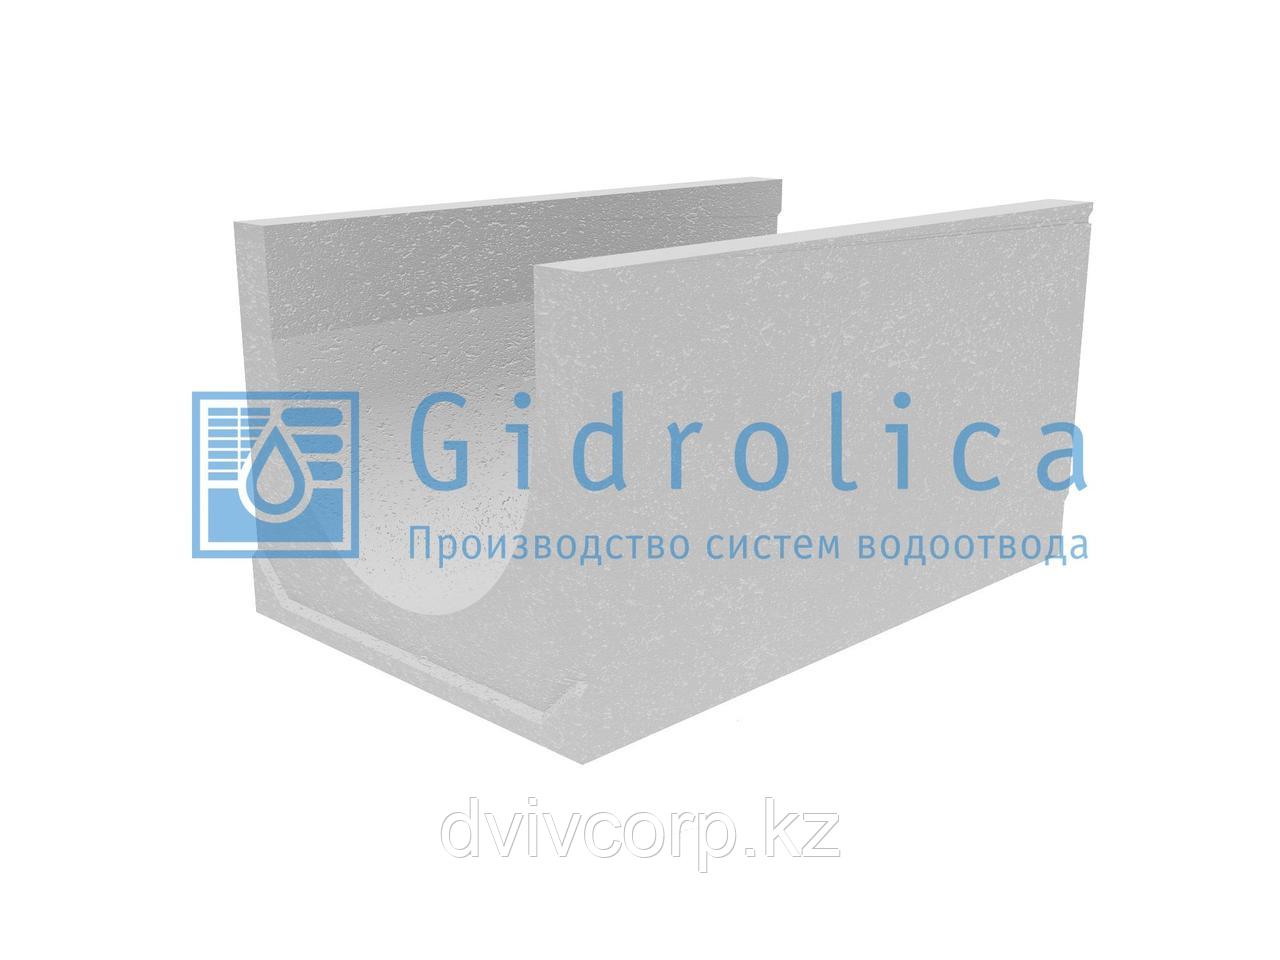 Лоток водоотводный бетонный коробчатый (СО-500мм), с уклоном 0,5%  КUу 100.65(50).54,5(45,5) - BGU-XL, № 19